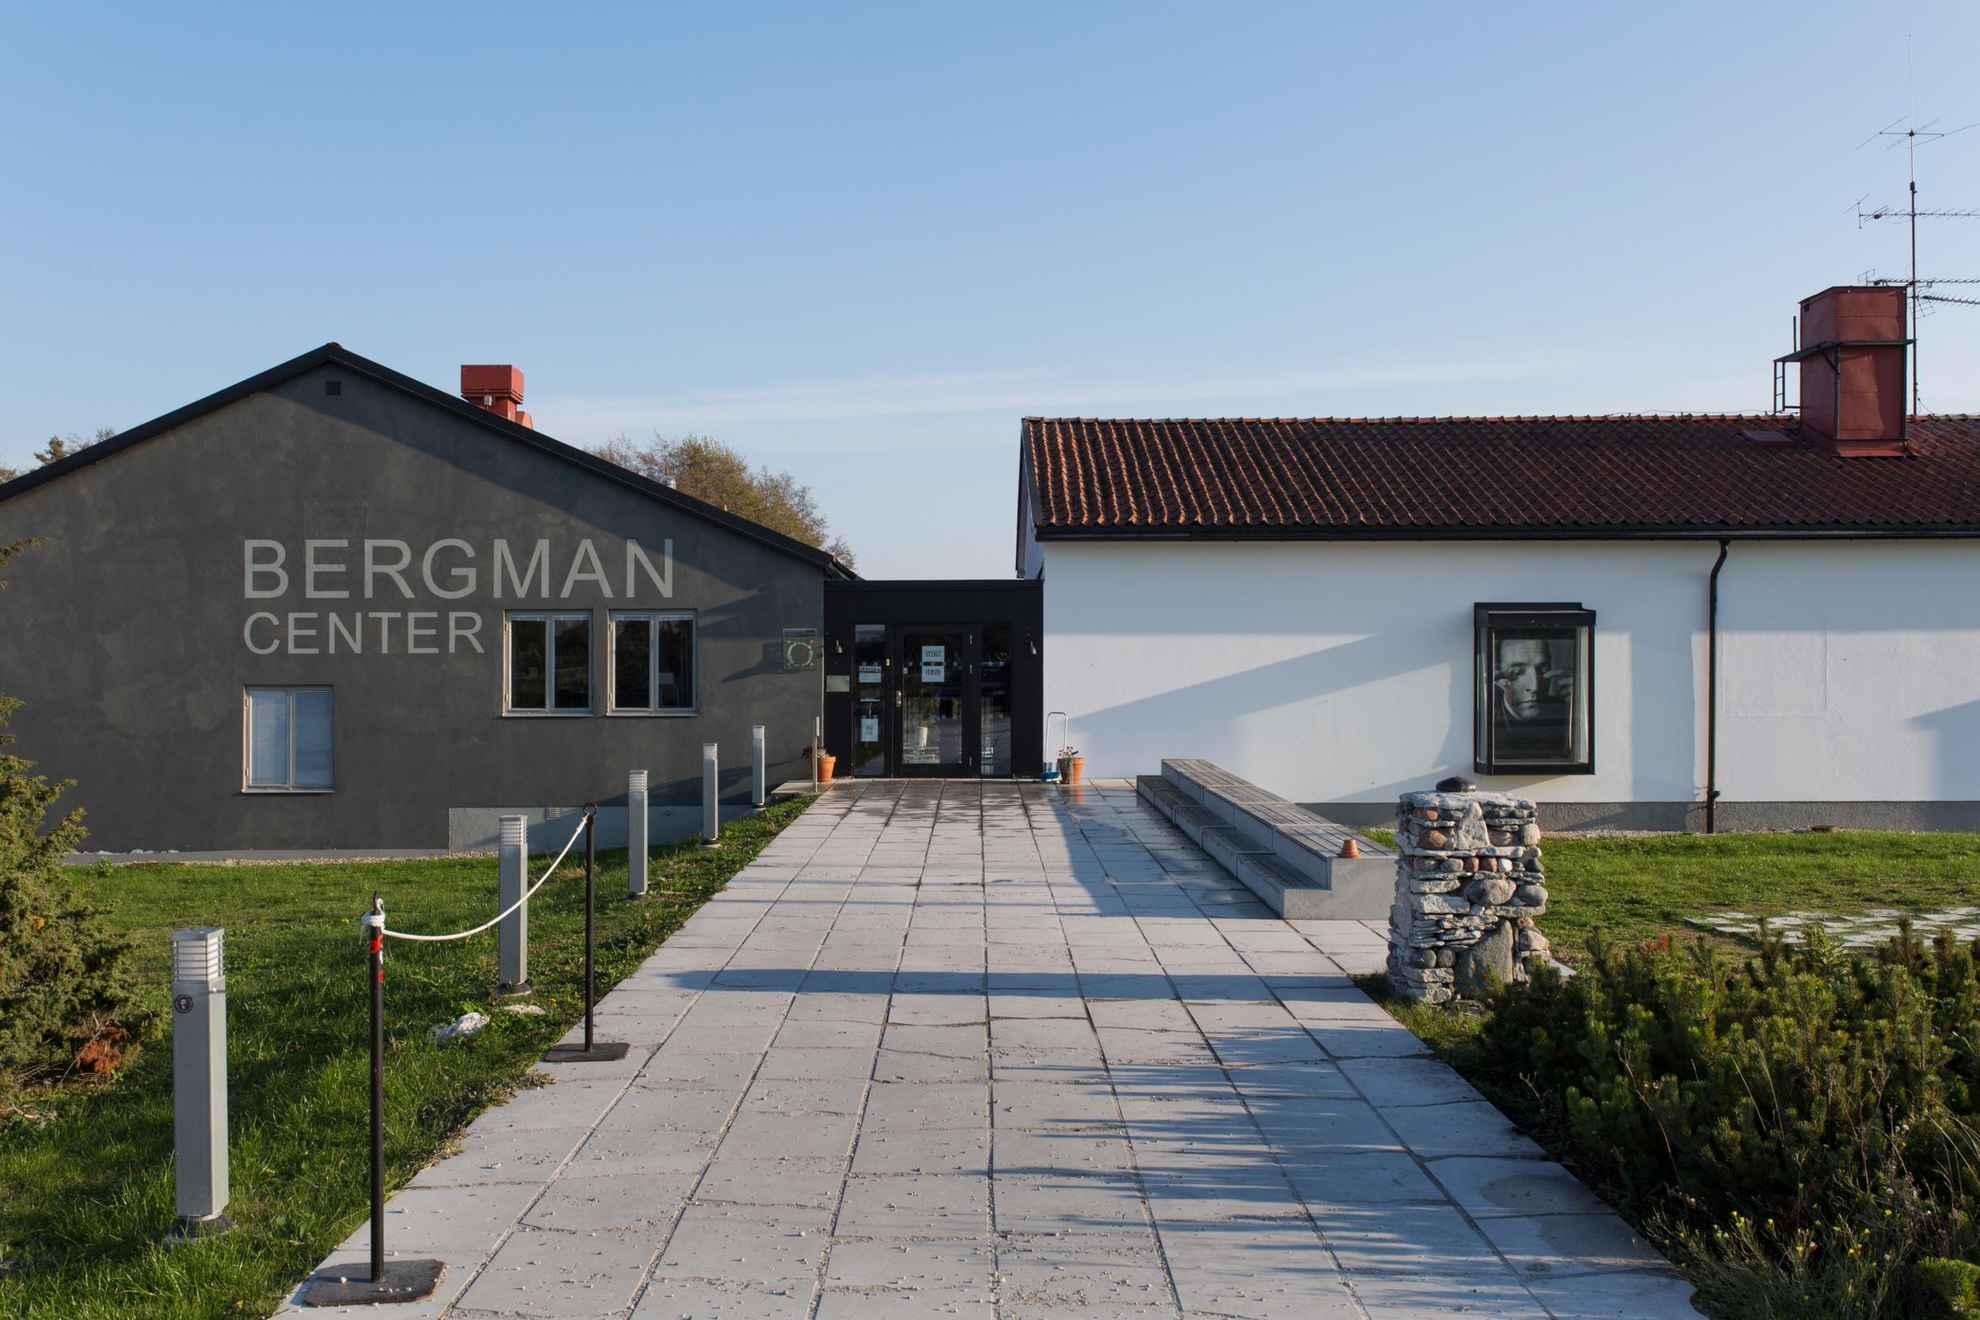 "Bergman centrum" staat op een grijs gebouw dat verbonden is met een wit gebouw.